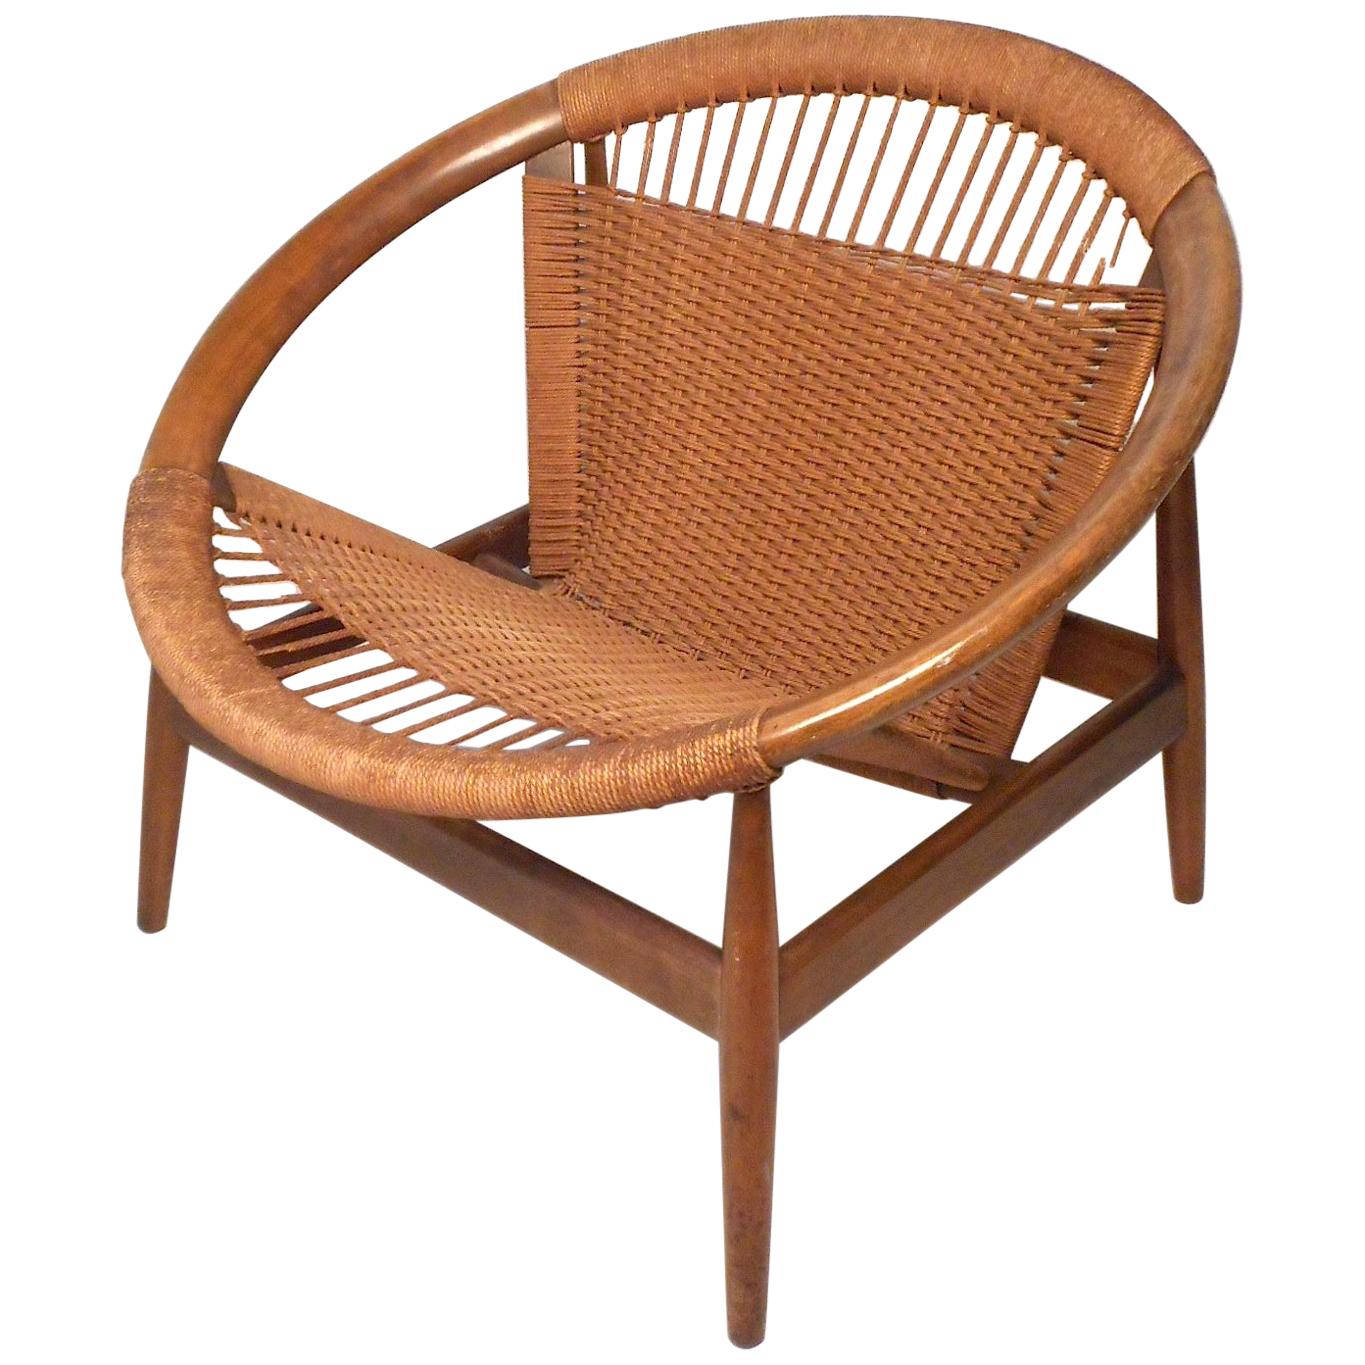 Danish Modern "Ringstol" Hoop Chair by Illum Wikkelsø